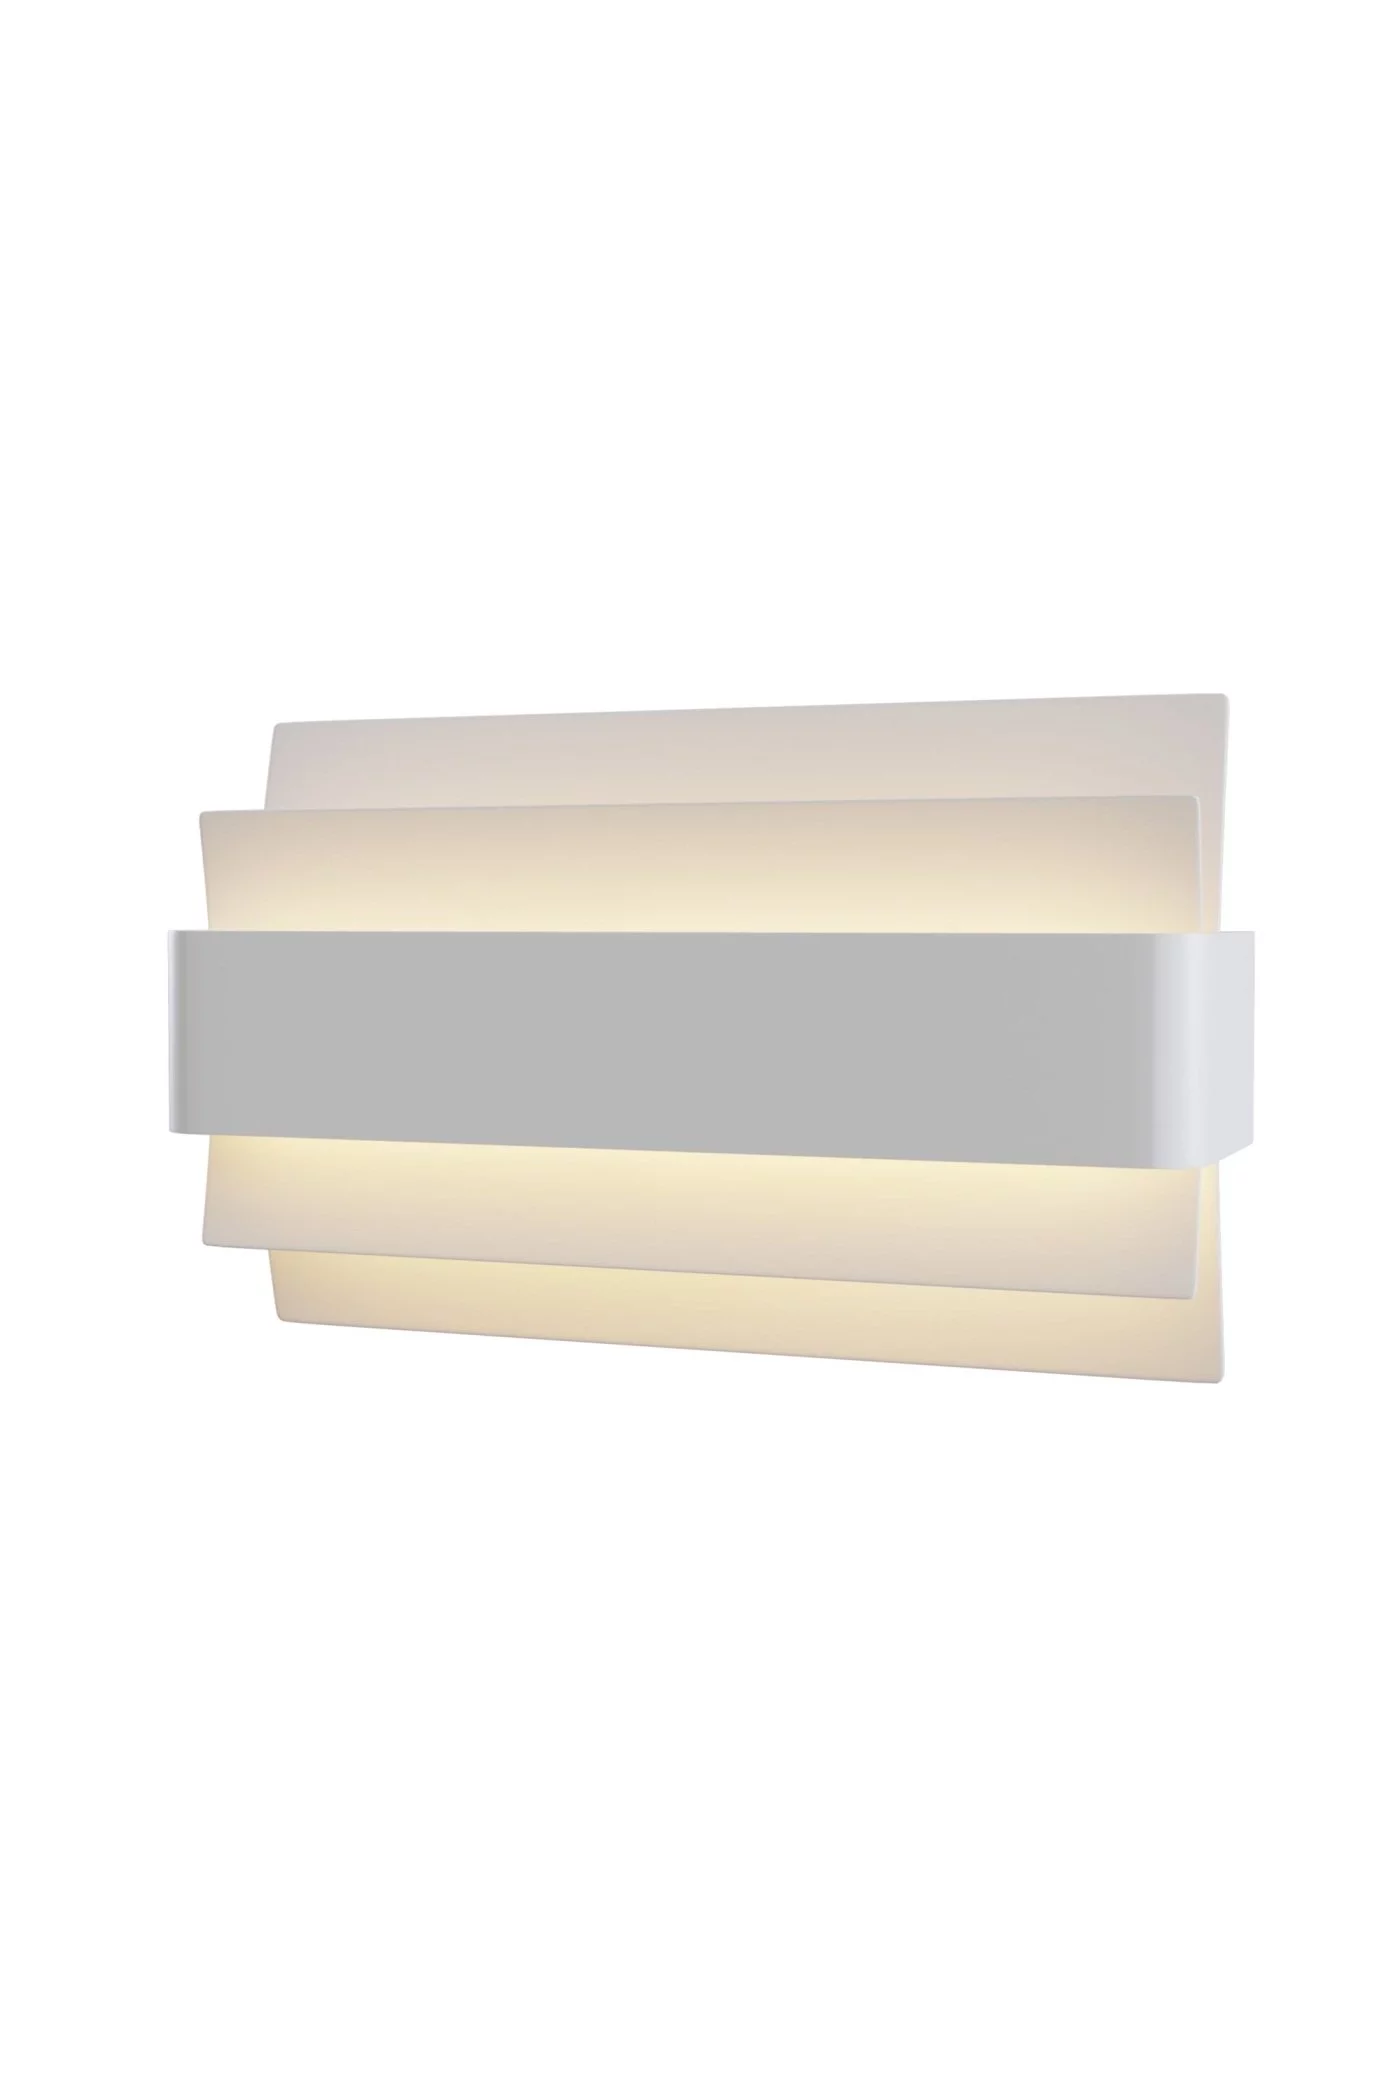   
                        Світильник настінний MAYTONI (Німеччина) 29112    
                         у стилі модерн.  
                                                                        Кольори плафонів і підвісок: білий.                         Матеріал: метал, акрил.                          фото 1